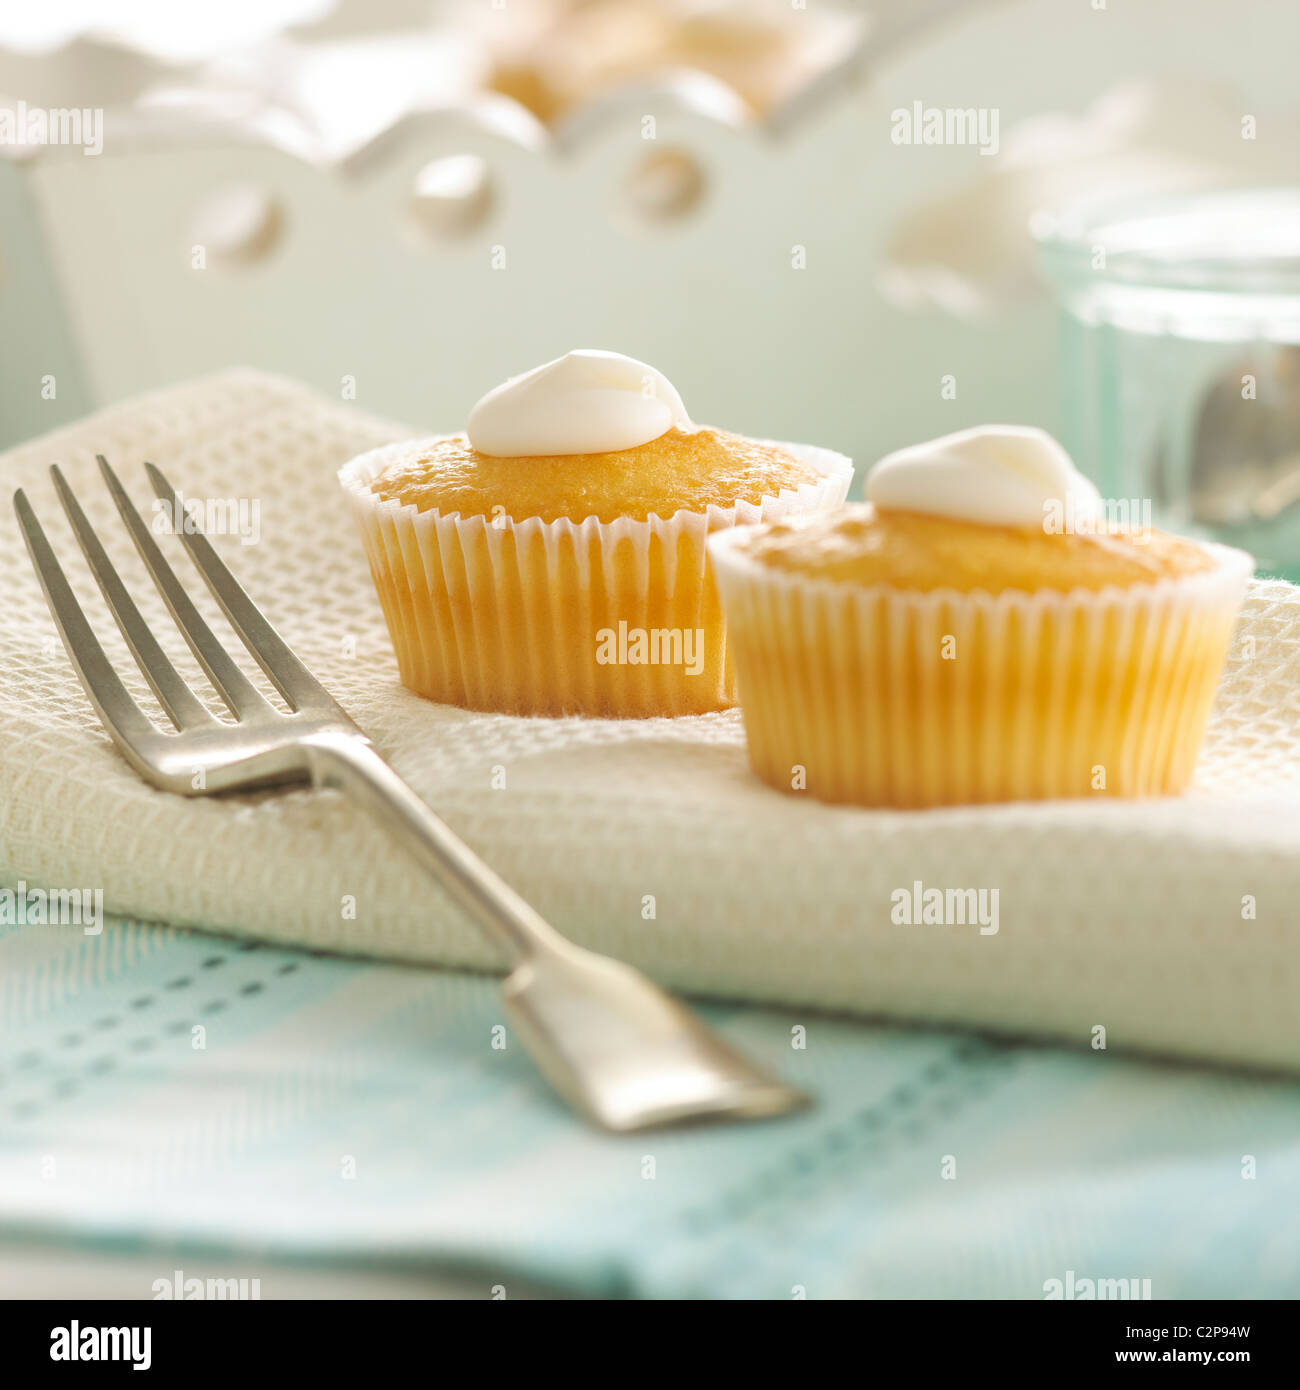 Due tortine con glassa bianca con forcella in casa scena di cottura. Luminosa immagine della scena contemporanea. Impostazione iniziale Foto Stock